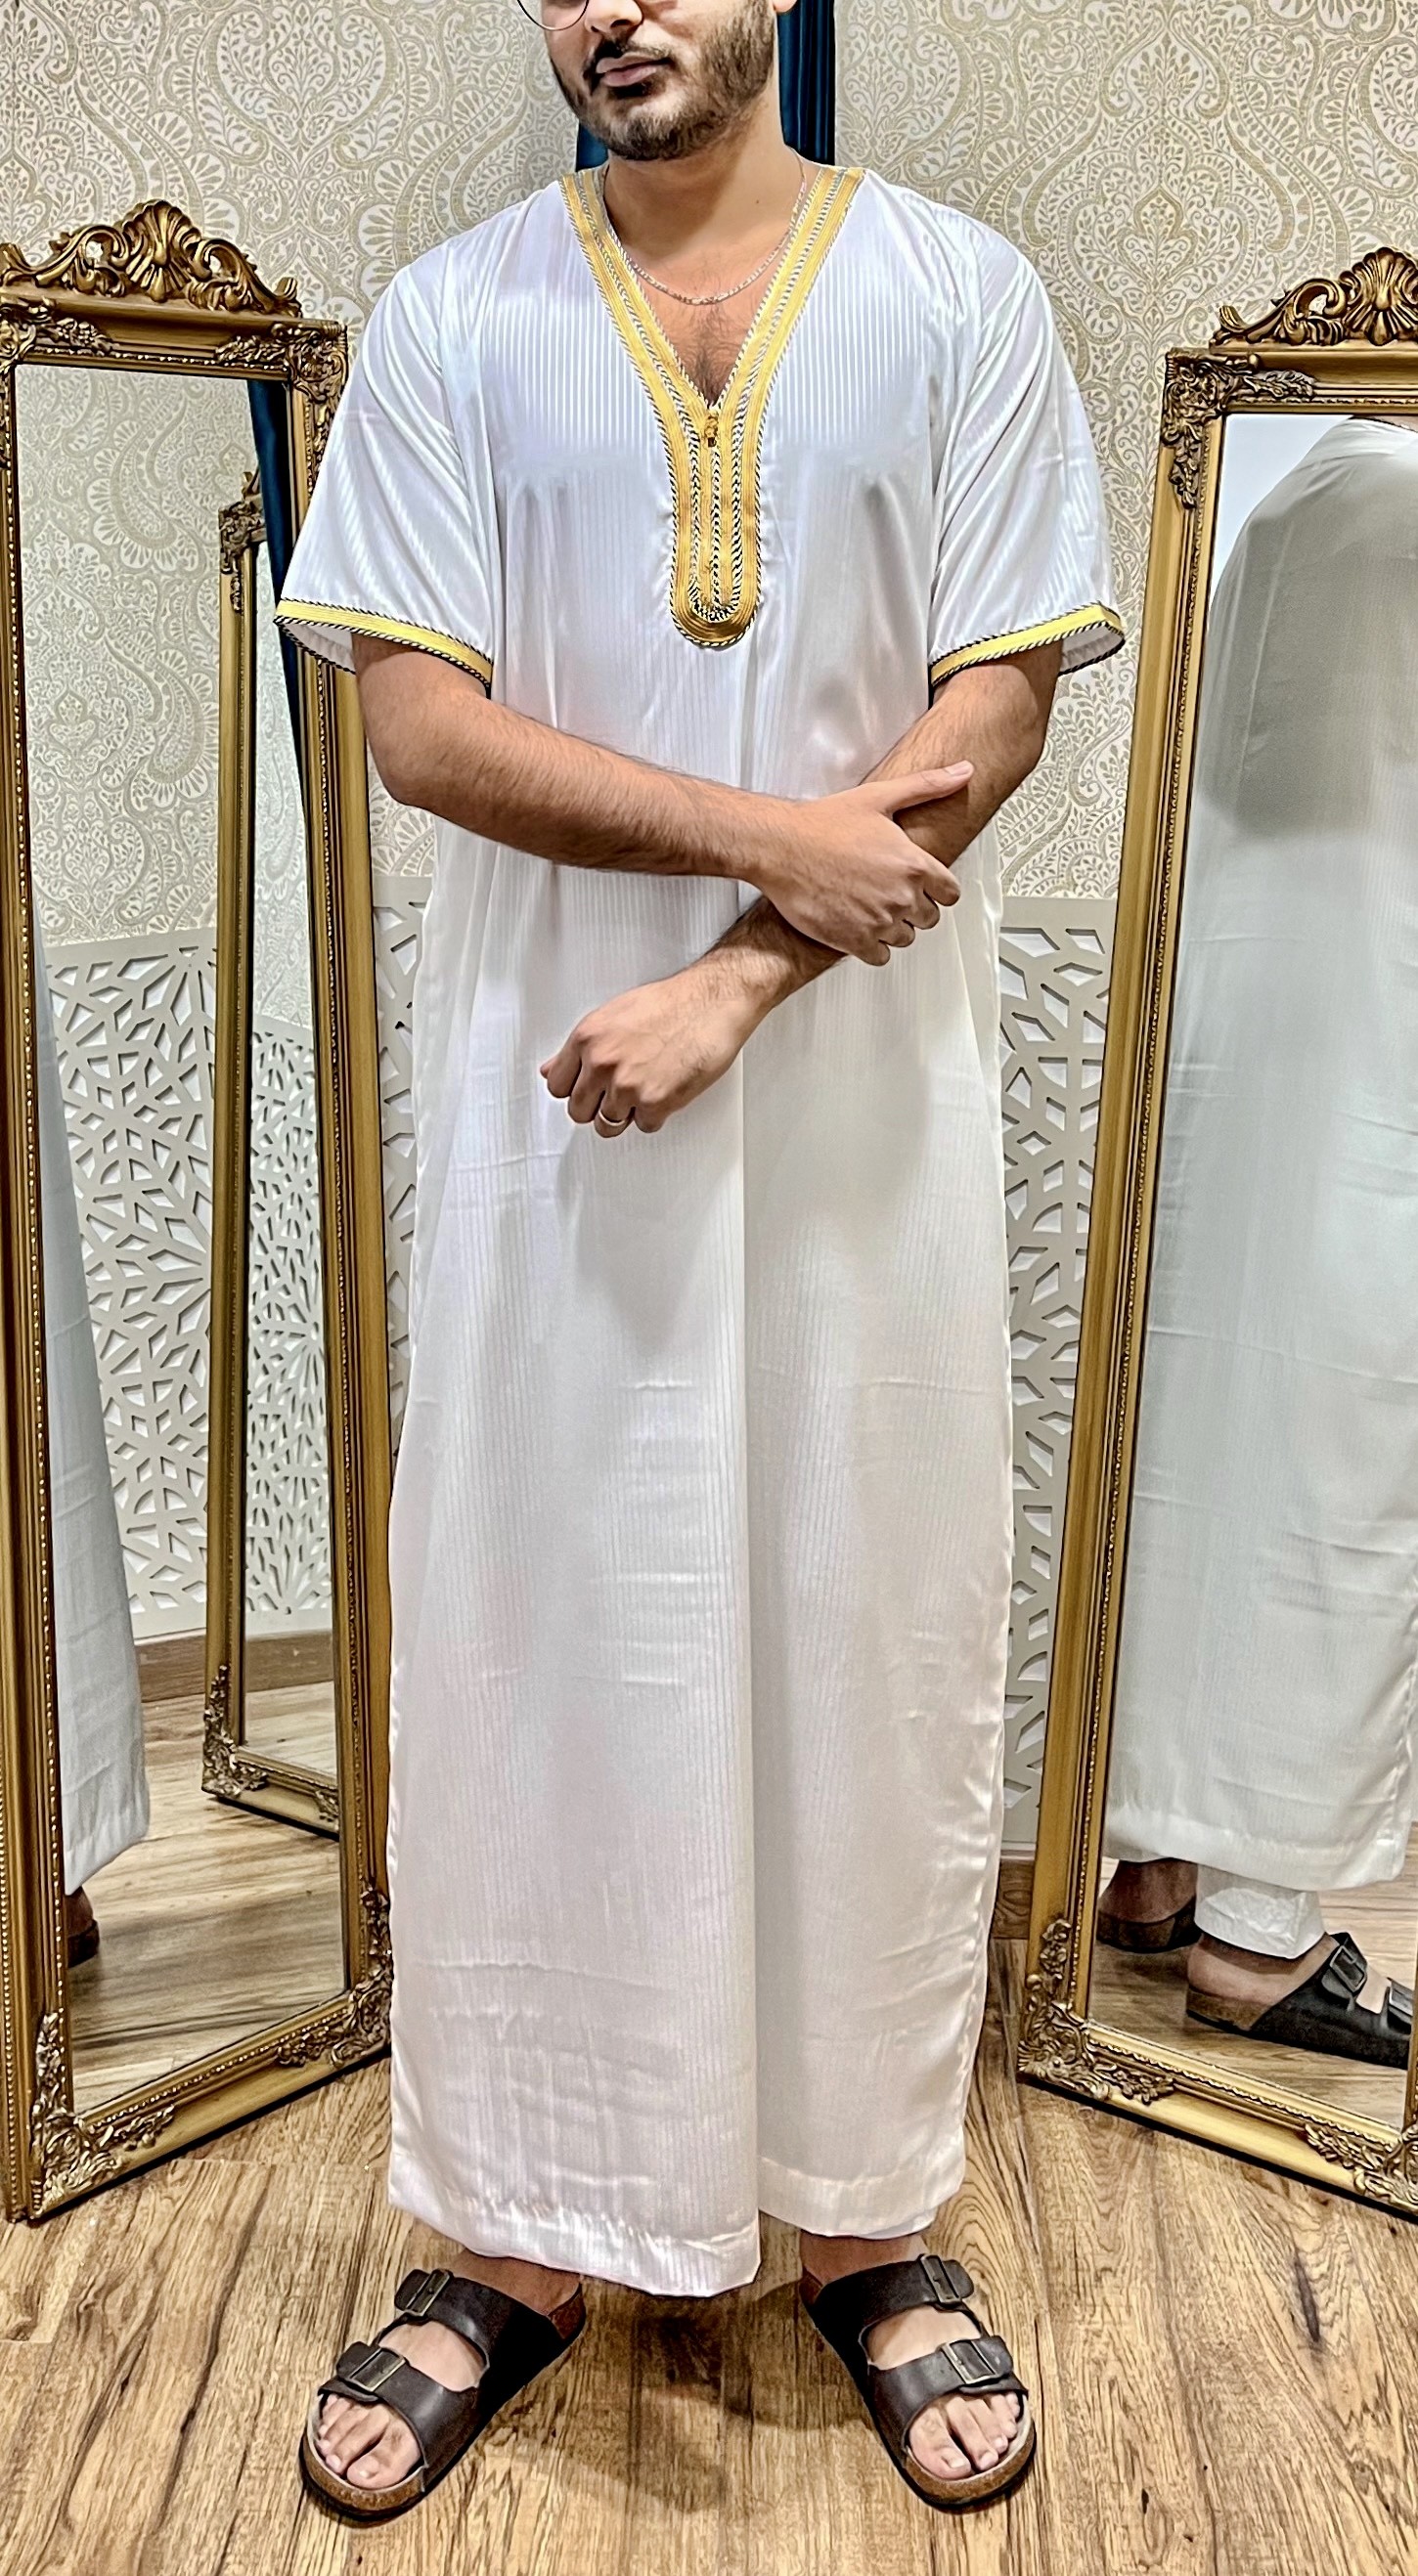 Qamis blanc à col saoudien - tenue traditionnelle pour homme musulman  Taille qamis hommes 60 Couleur blanc